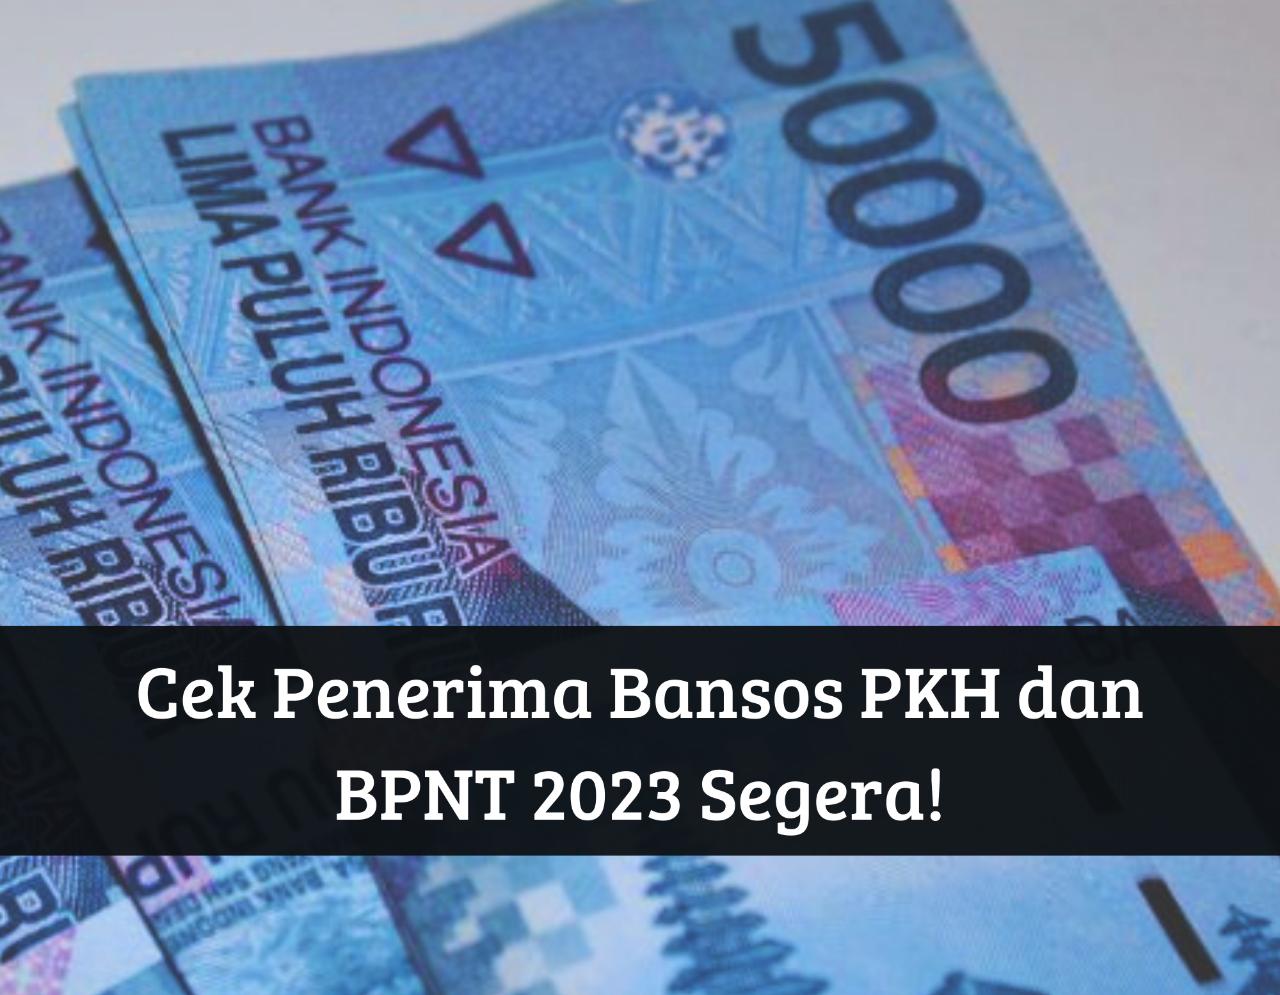 Cek Bansos PKH dan BPNT 2023 Cair Serentak September! Uang Gratis Ini Langsung Masuk ke Rekening Penerima